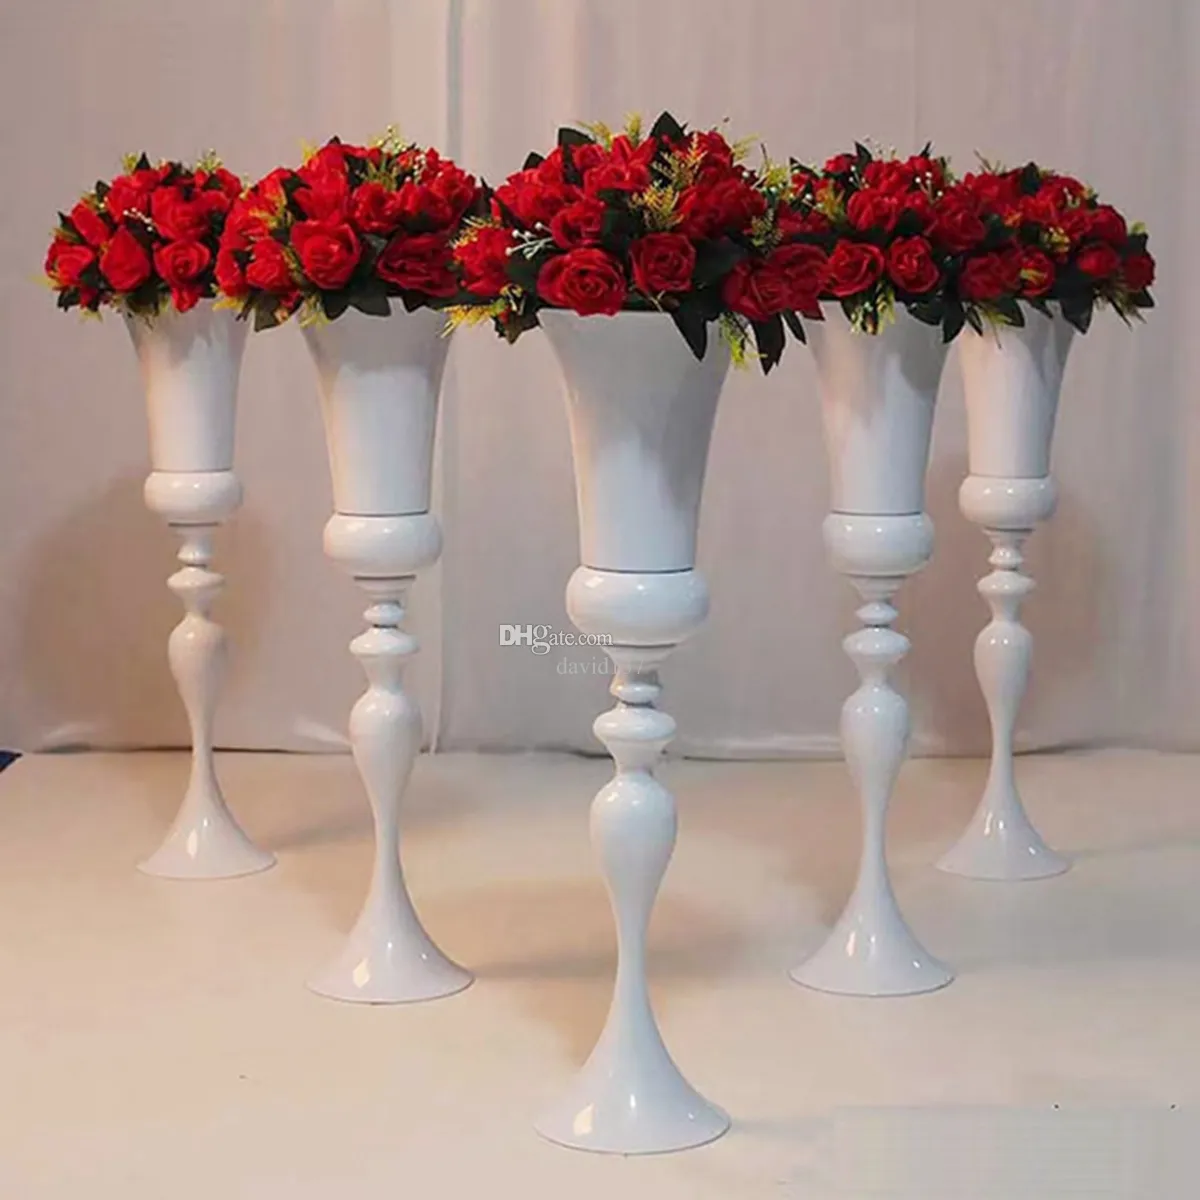 Eleganter, hoher Blumenständer aus schwarzem Metall, Kronleuchter, Tischdekoration, Blumenhalter, vielseitige Hochzeitsblumenvase aus Metall